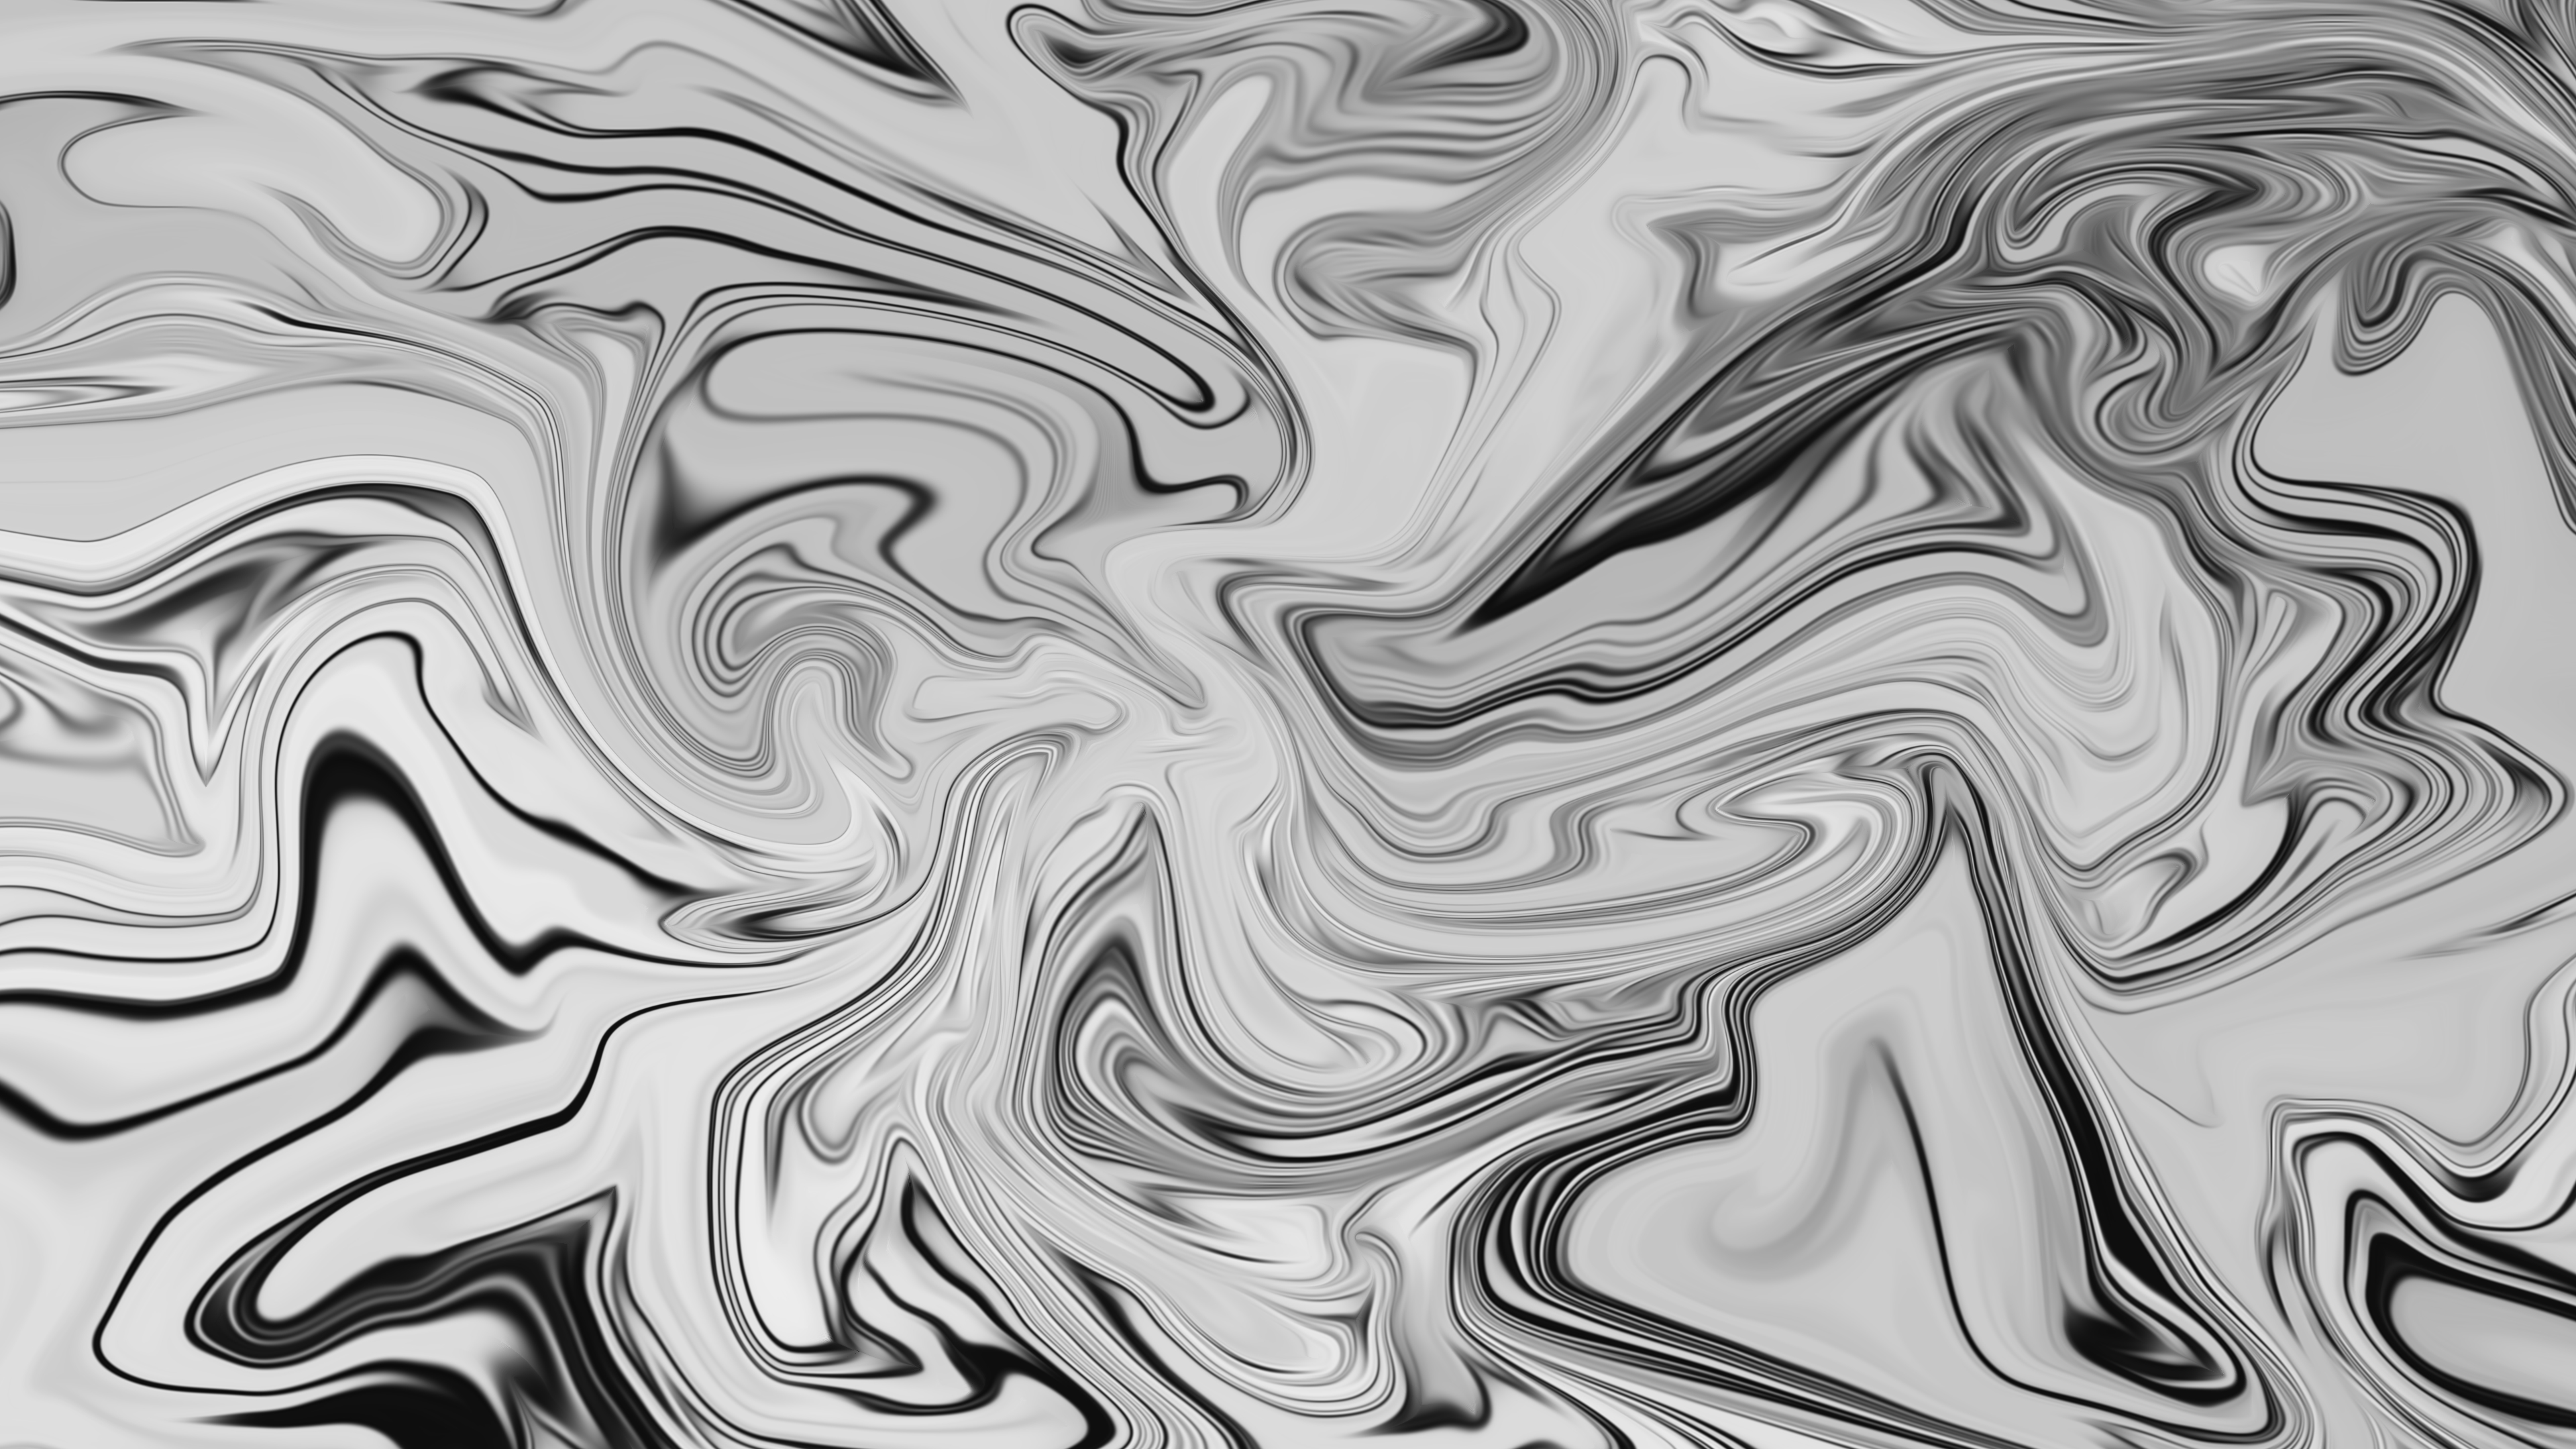 Abstract Fluid Liquid Artwork ArtStation 3840x2160